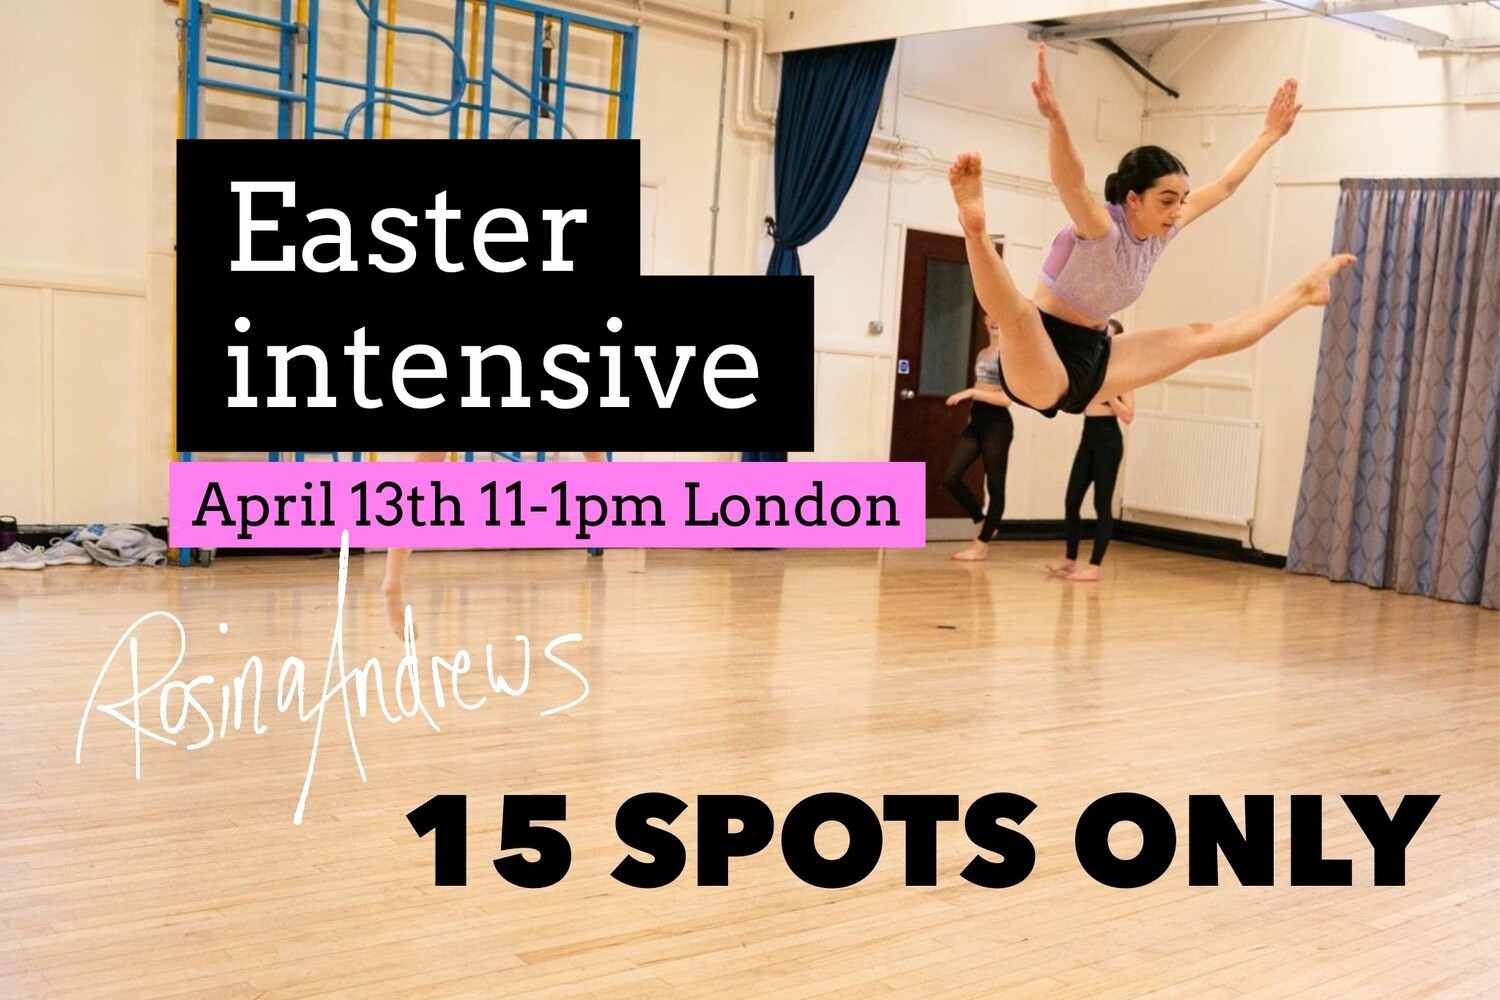 Dance Smarter Easter Intensive